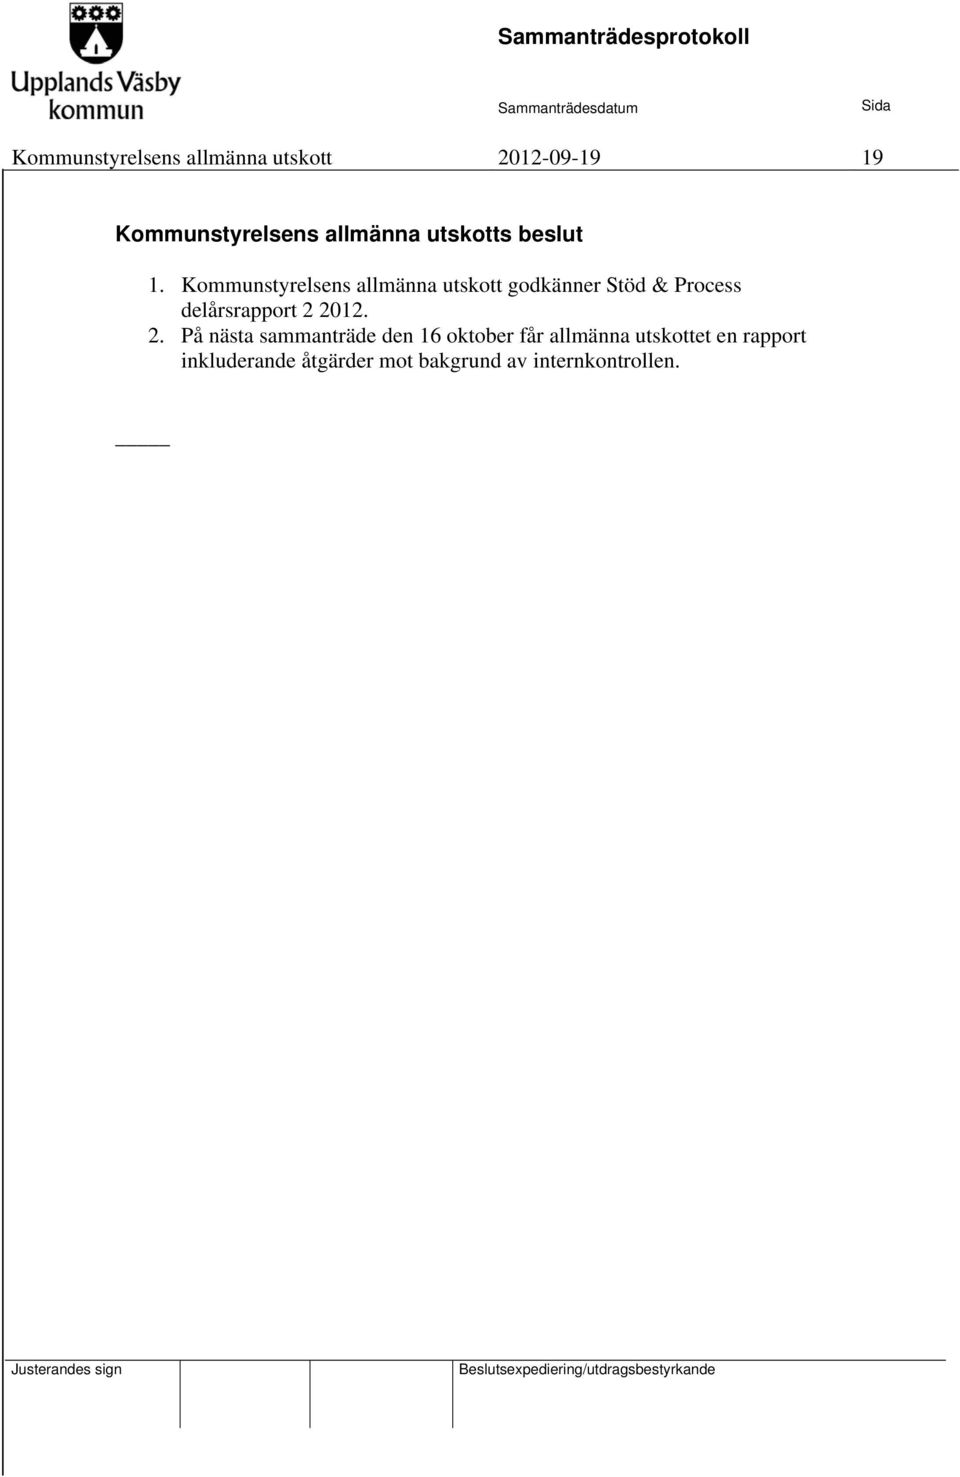 Kommunstyrelsens allmänna utskott godkänner Stöd & Process delårsrapport 2